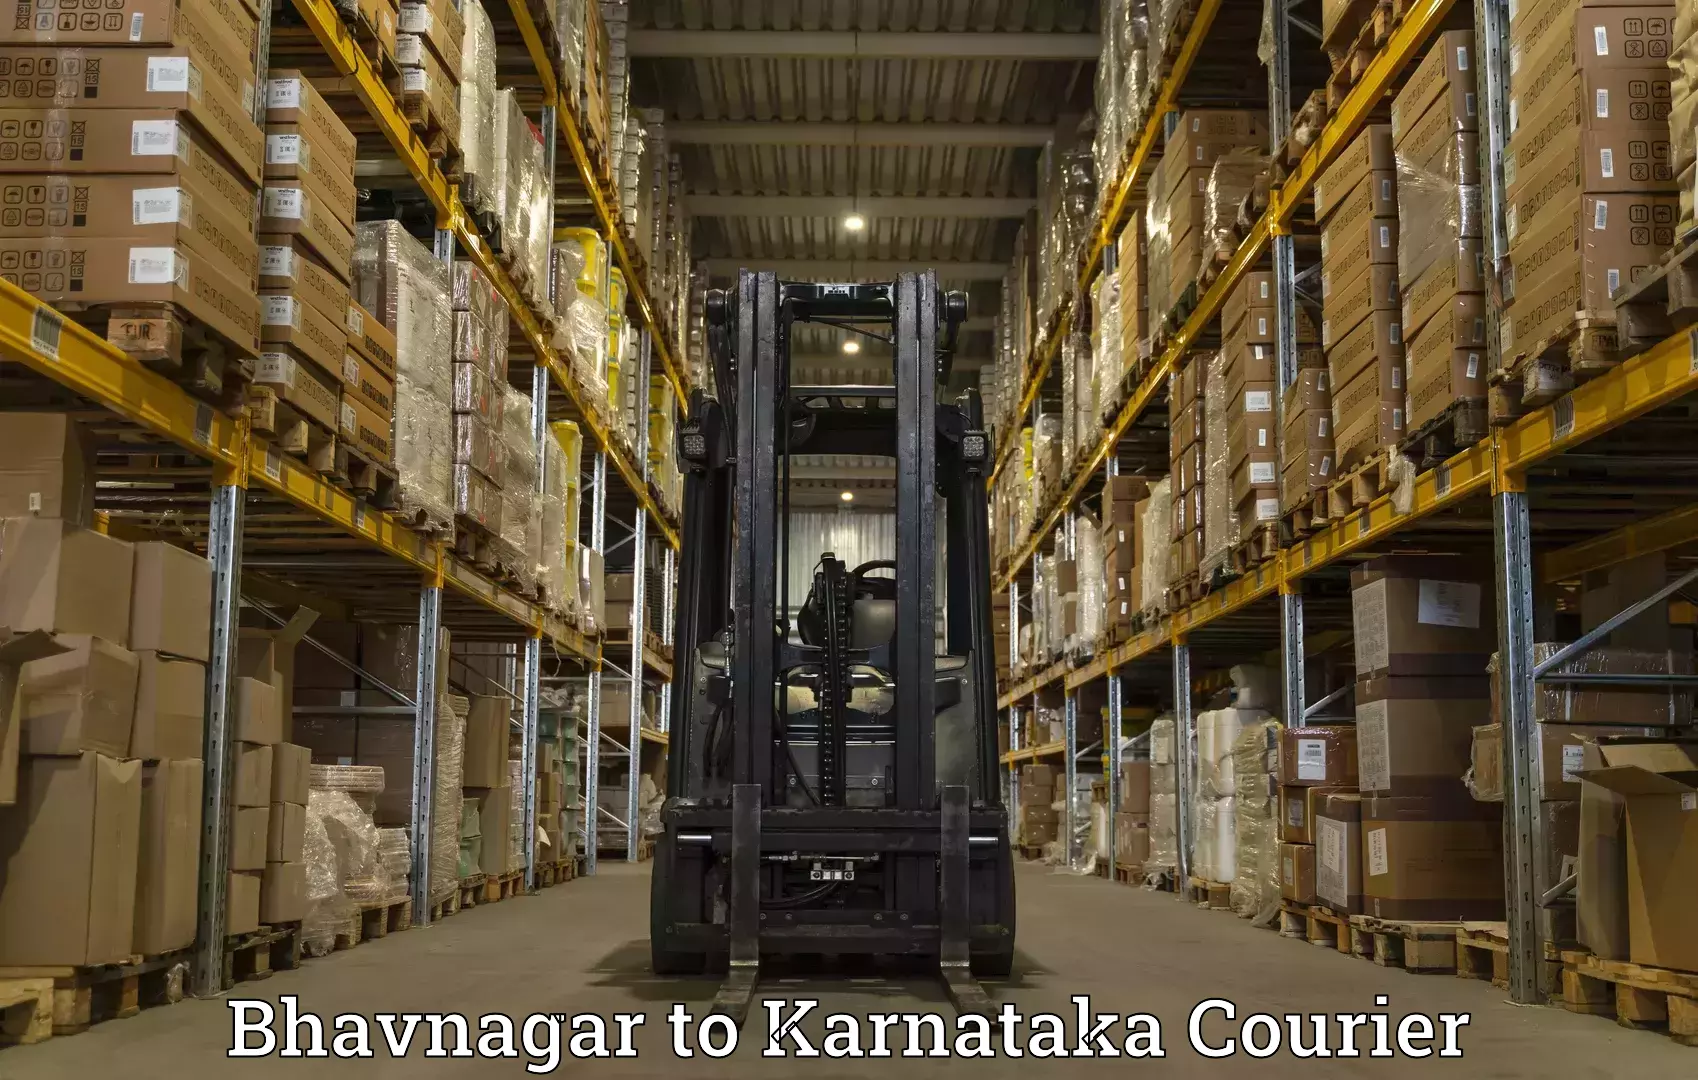 User-friendly courier app Bhavnagar to Navalgund